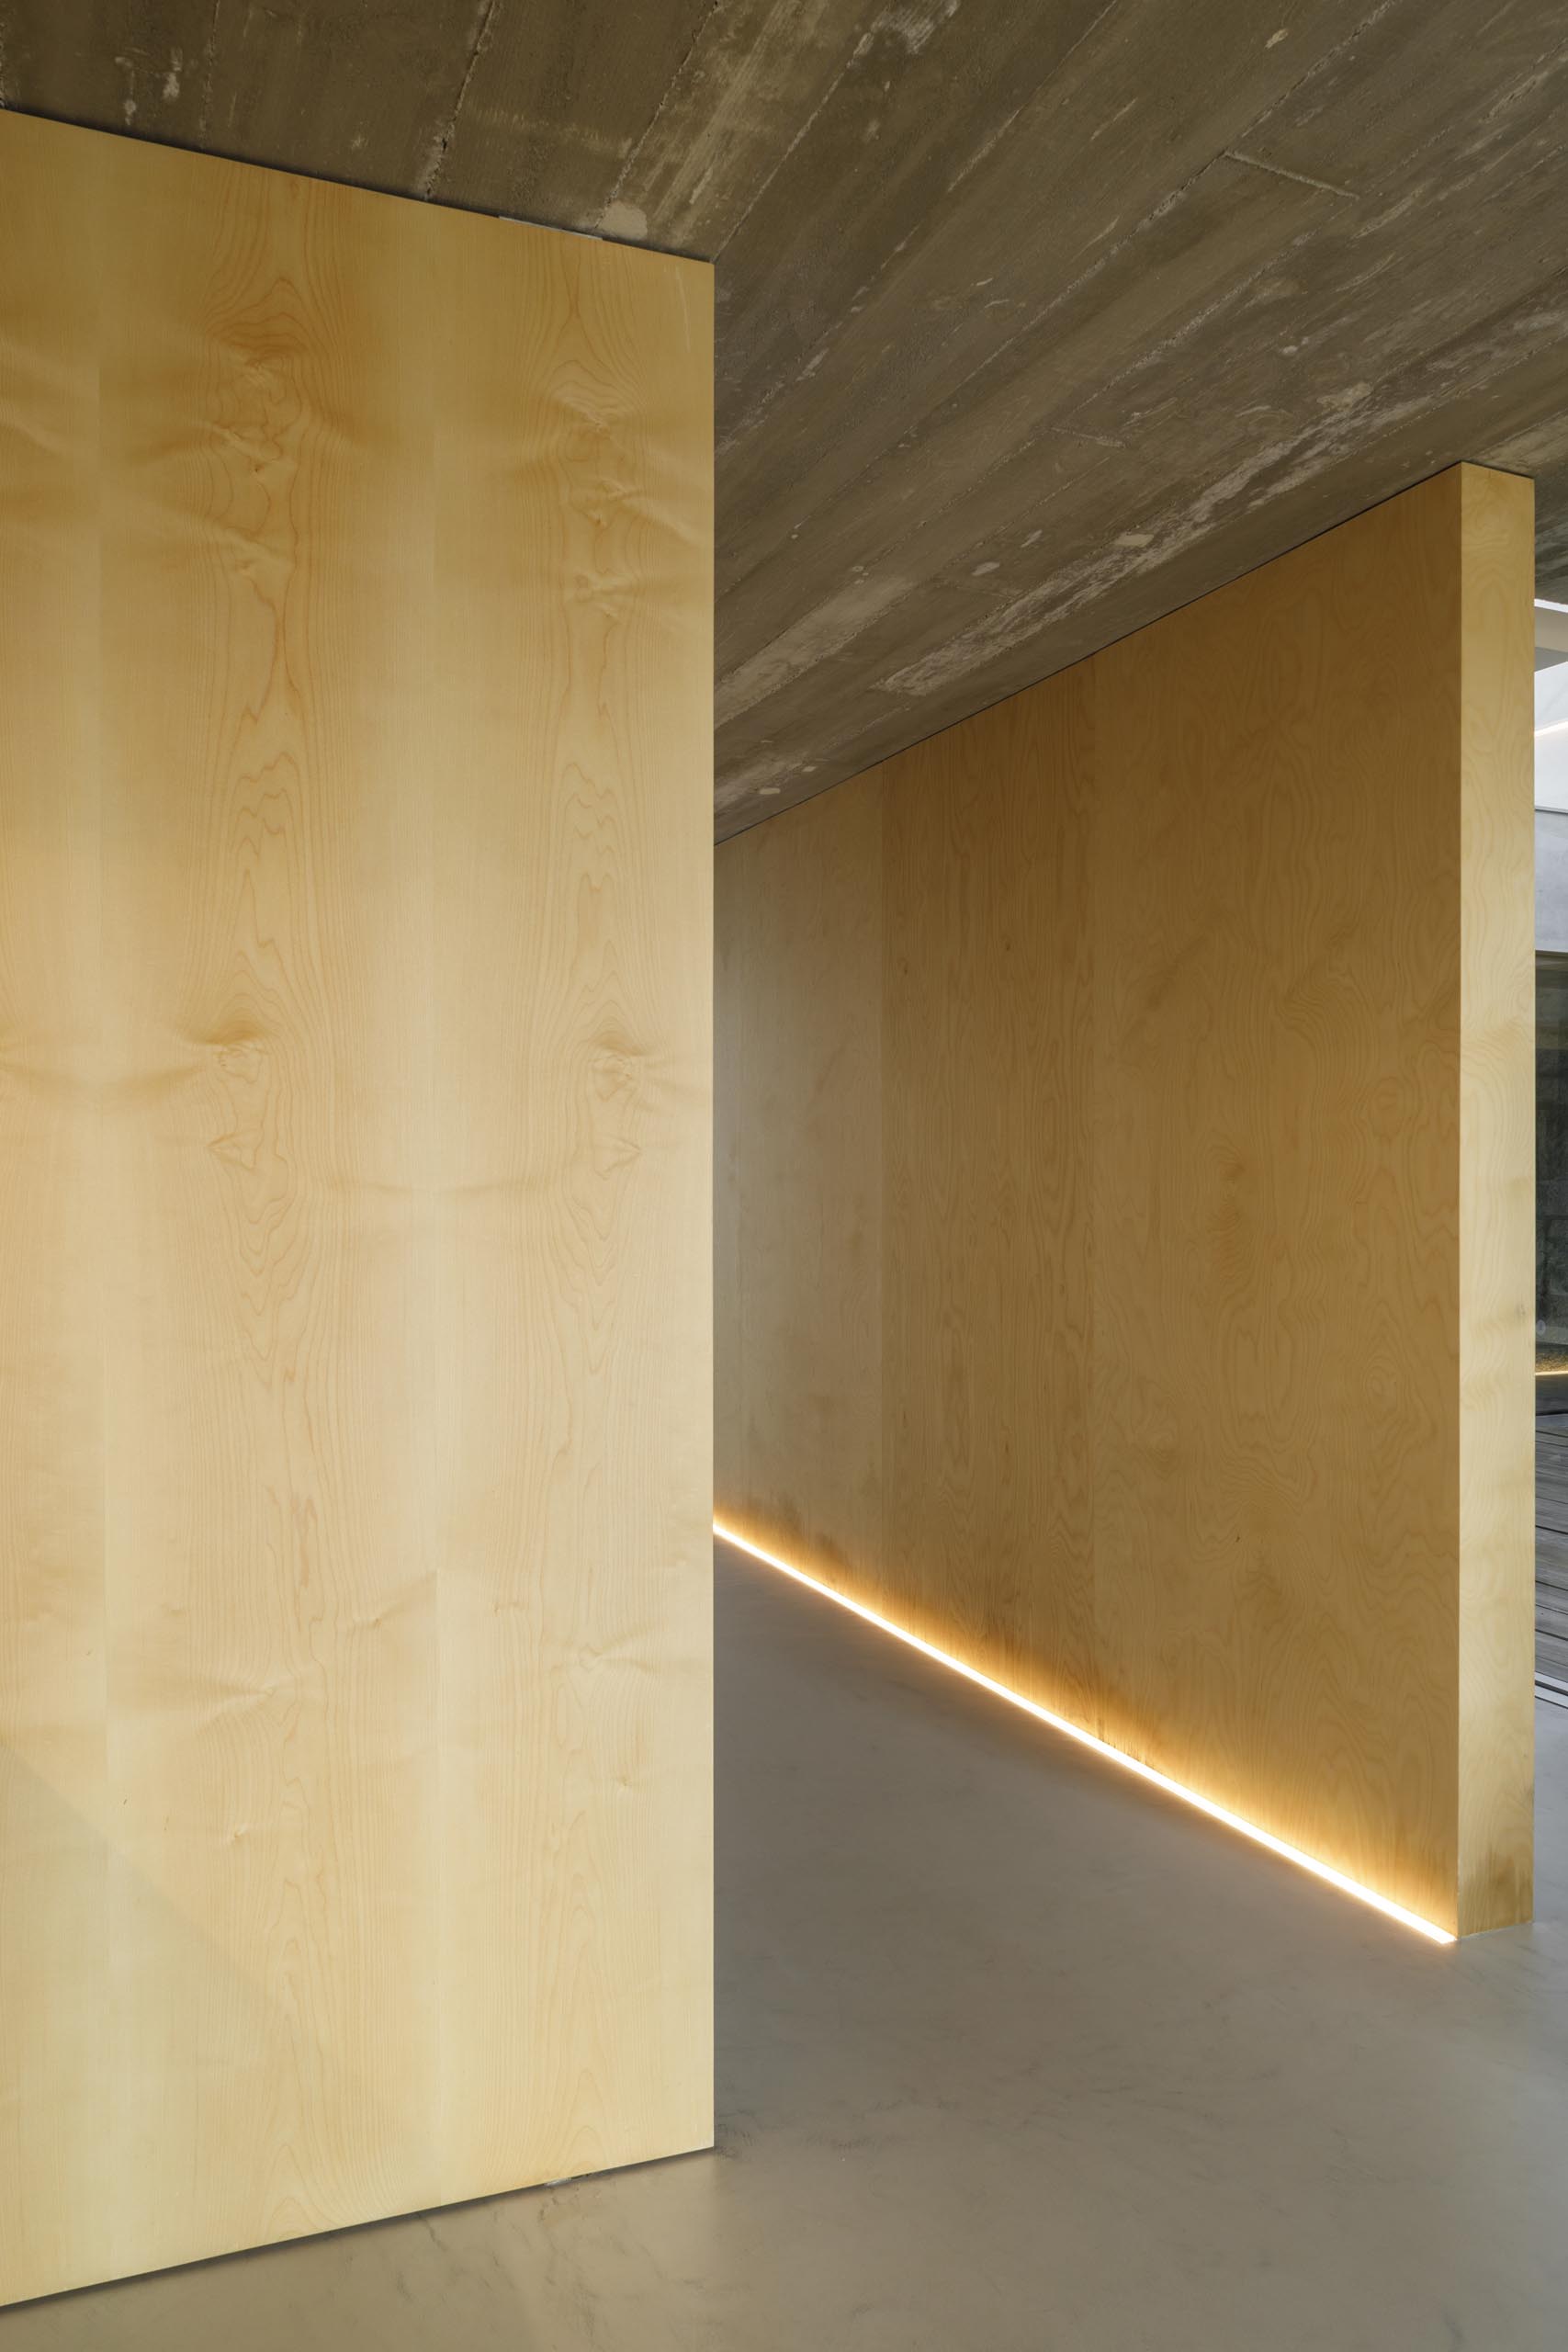 Коридор с деревянными стенами освещен светодиодной подсветкой на полу.